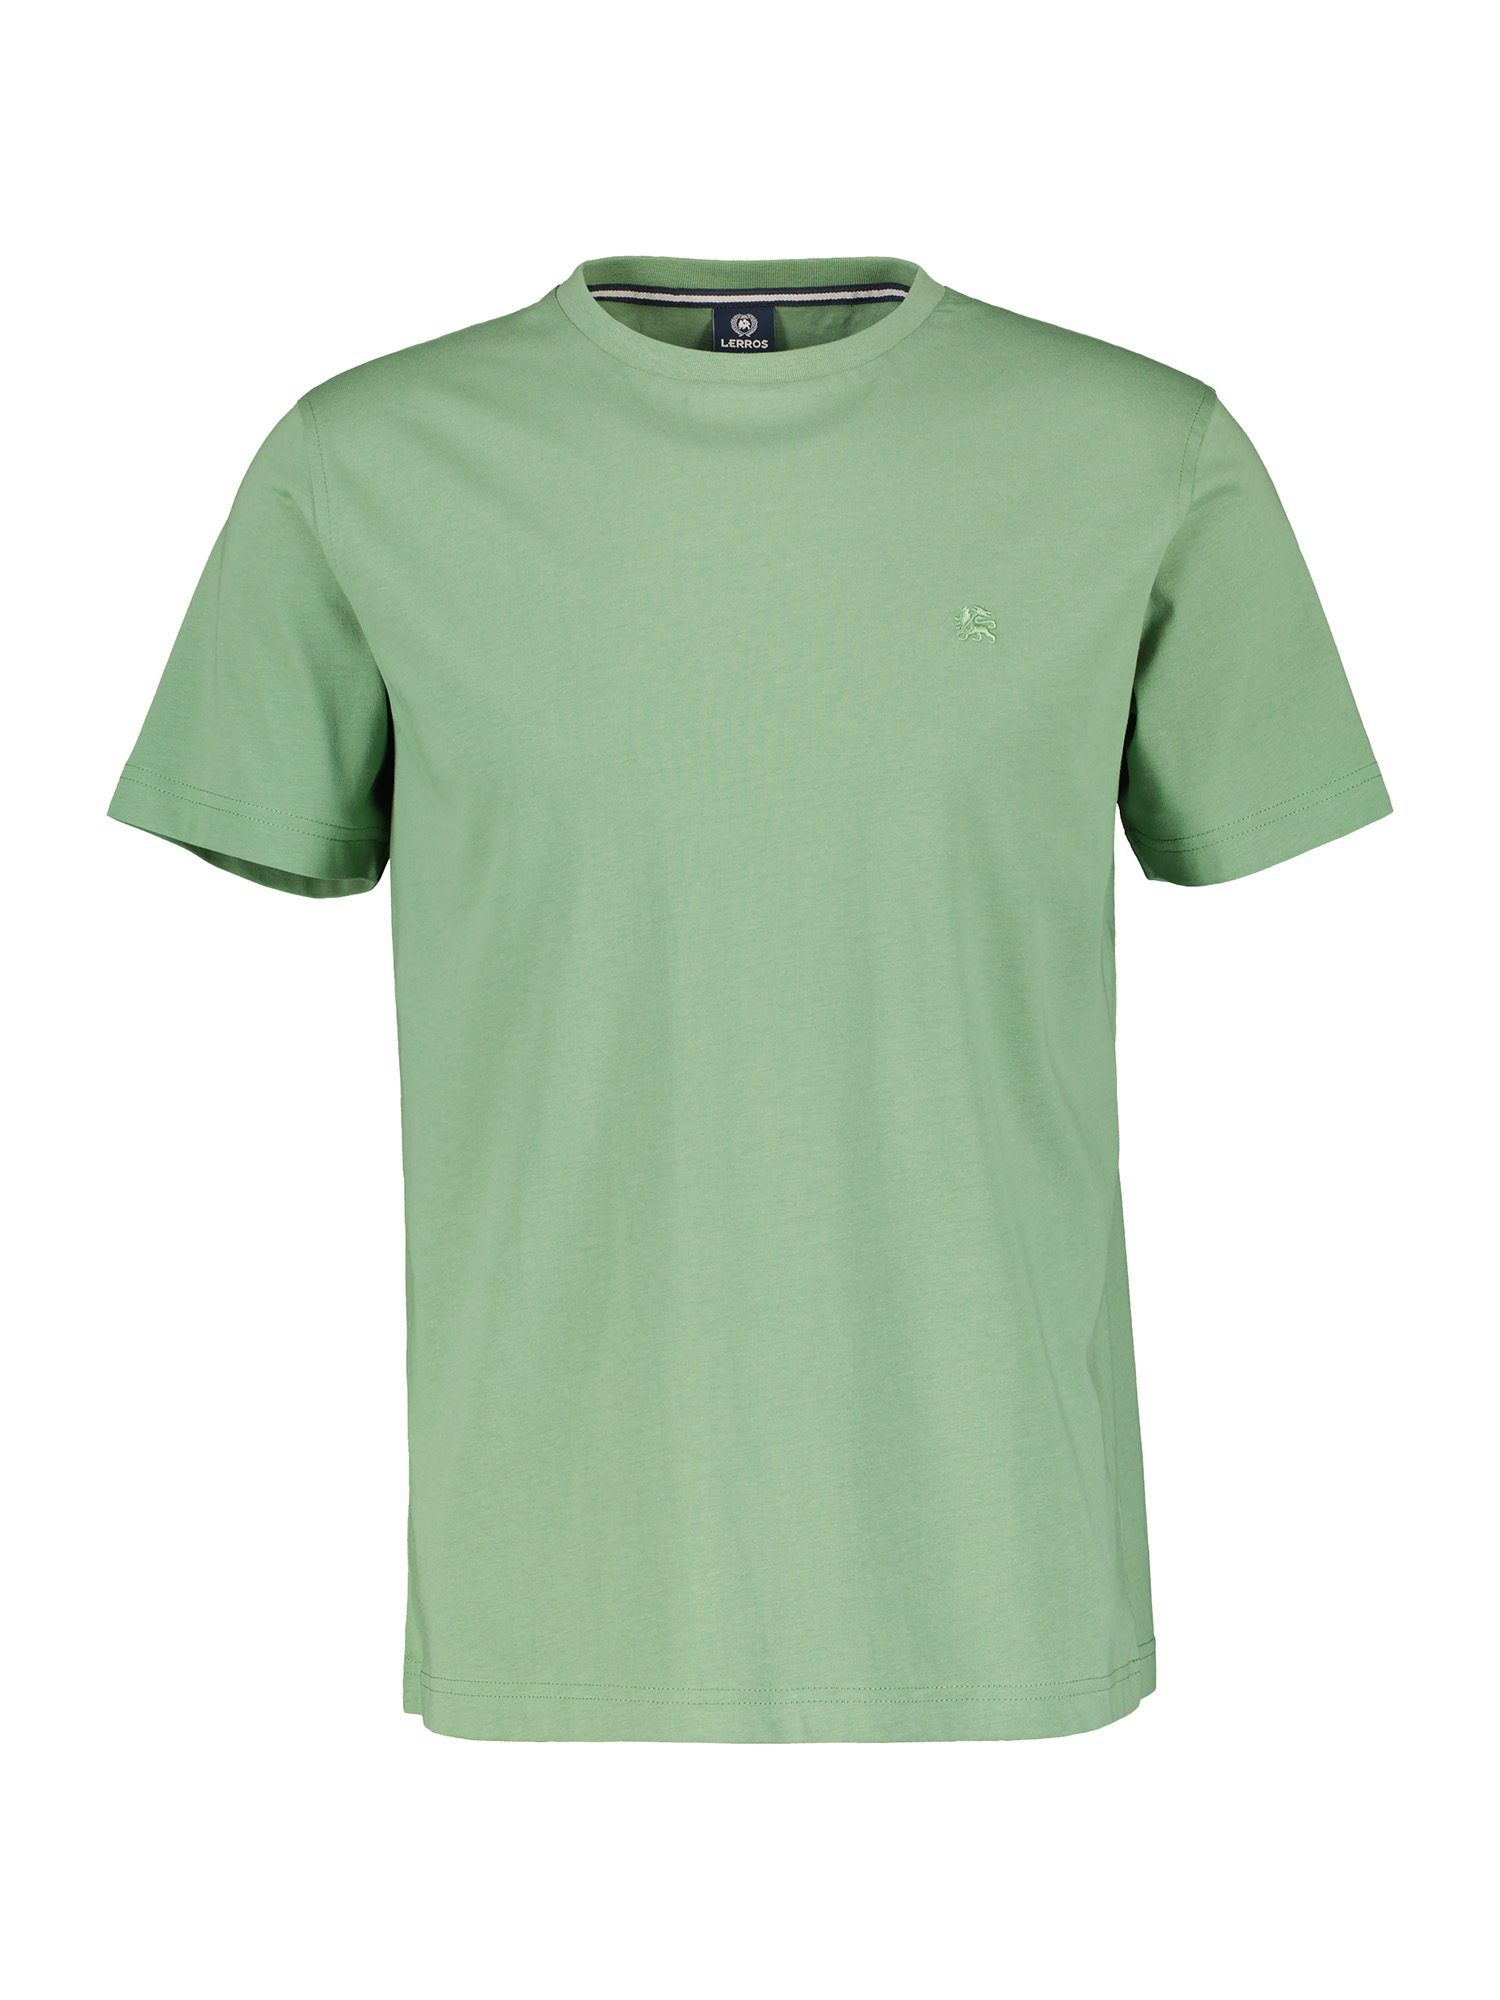 LERROS in T-Shirt GREEN vielen T-Shirt LERROS Farben SAGE